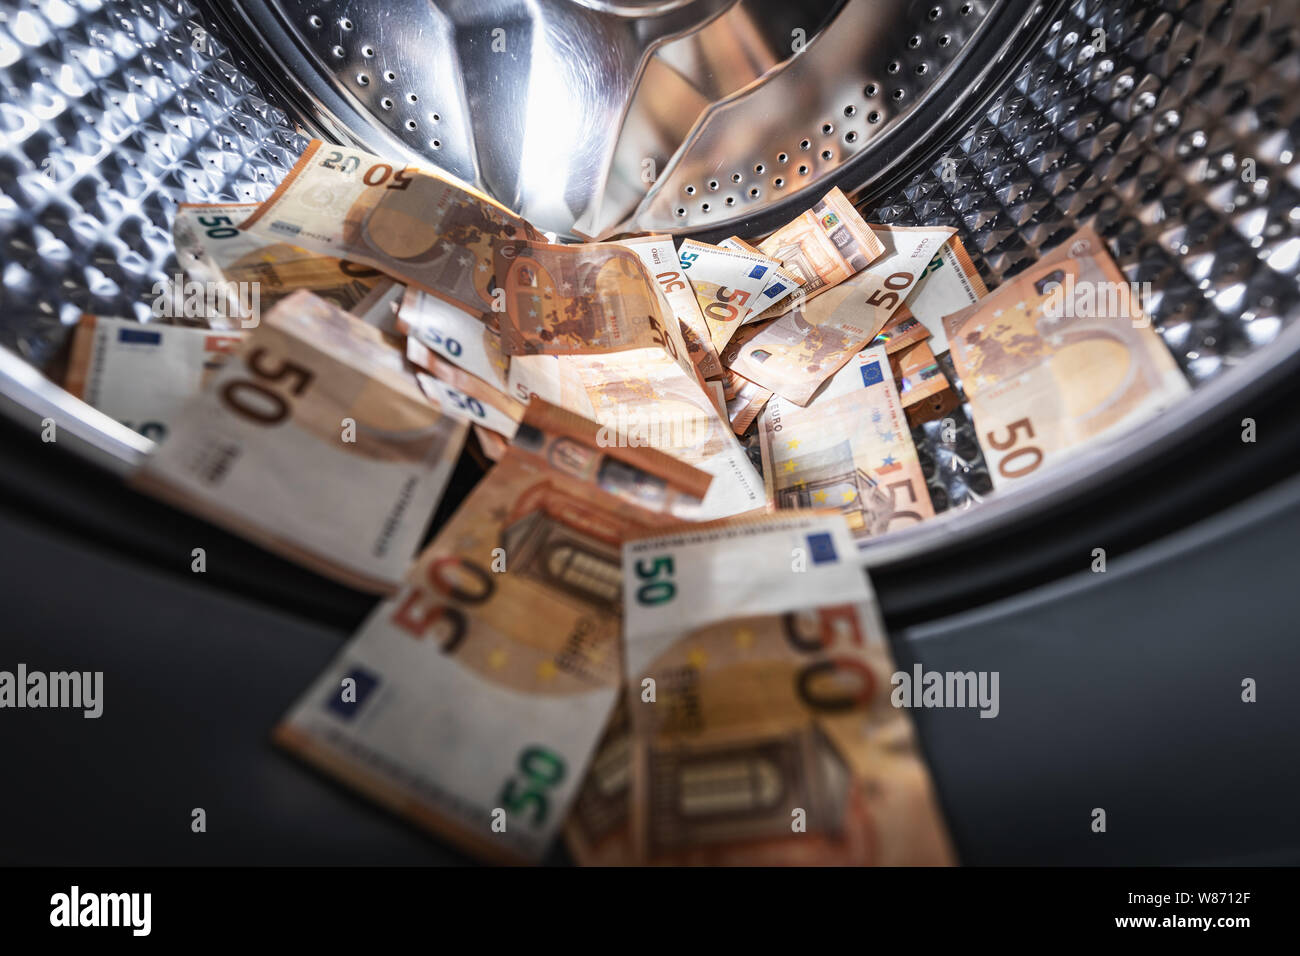 Concept de blanchiment - billets en euros lave linge Banque D'Images